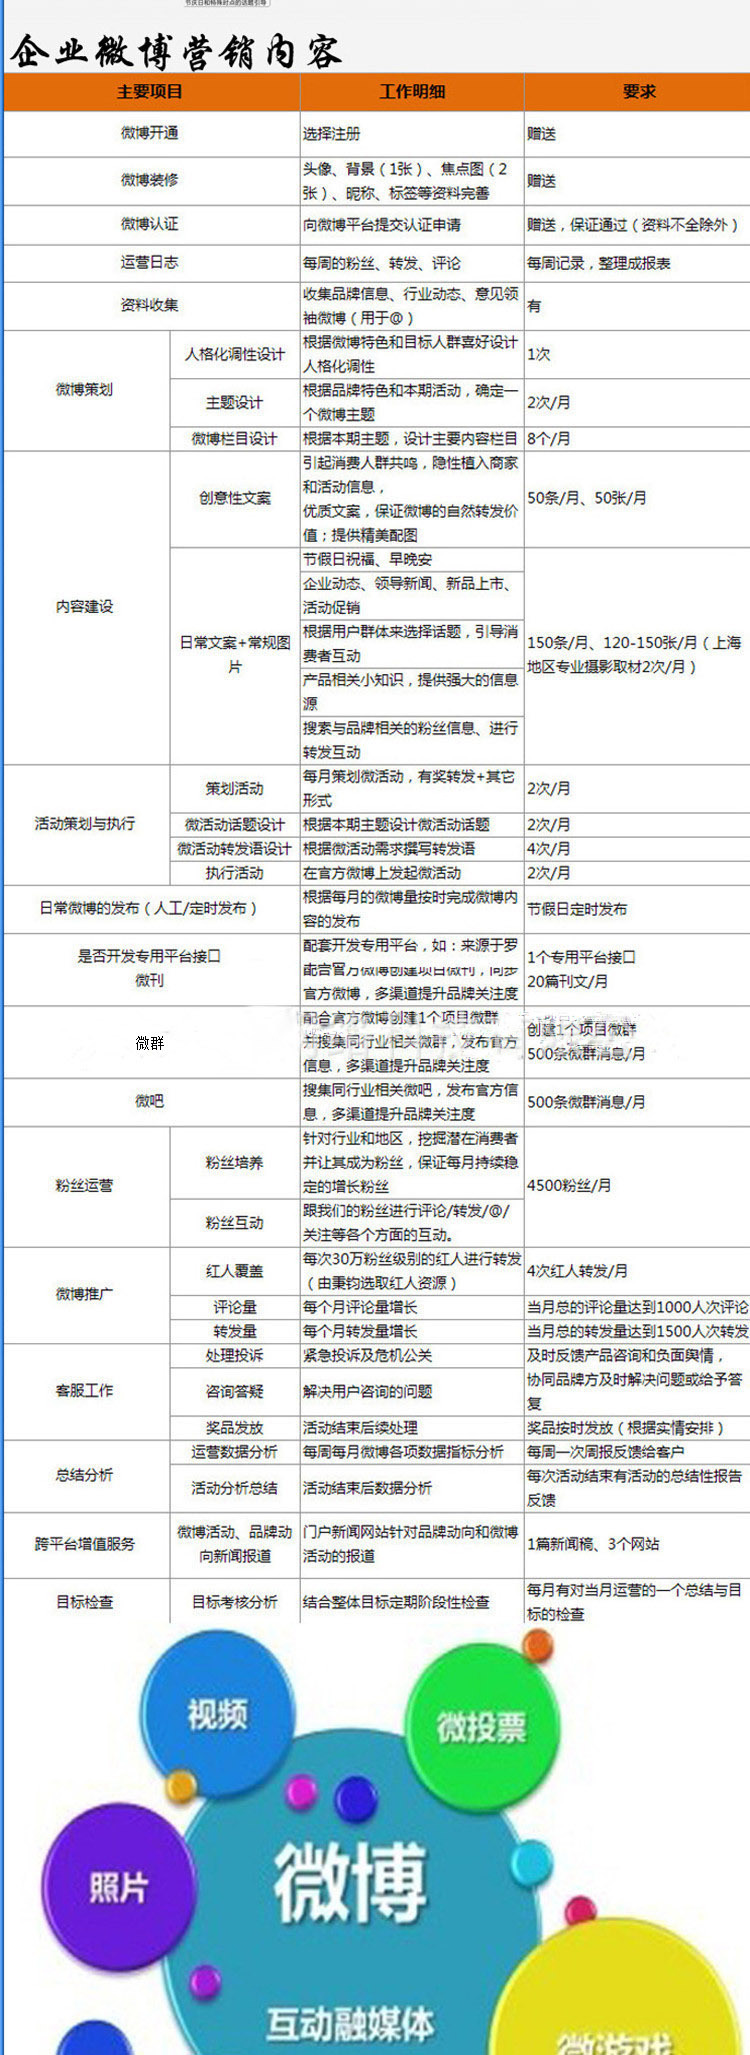 【企业微博代运营官方微博营销运营服务微博商